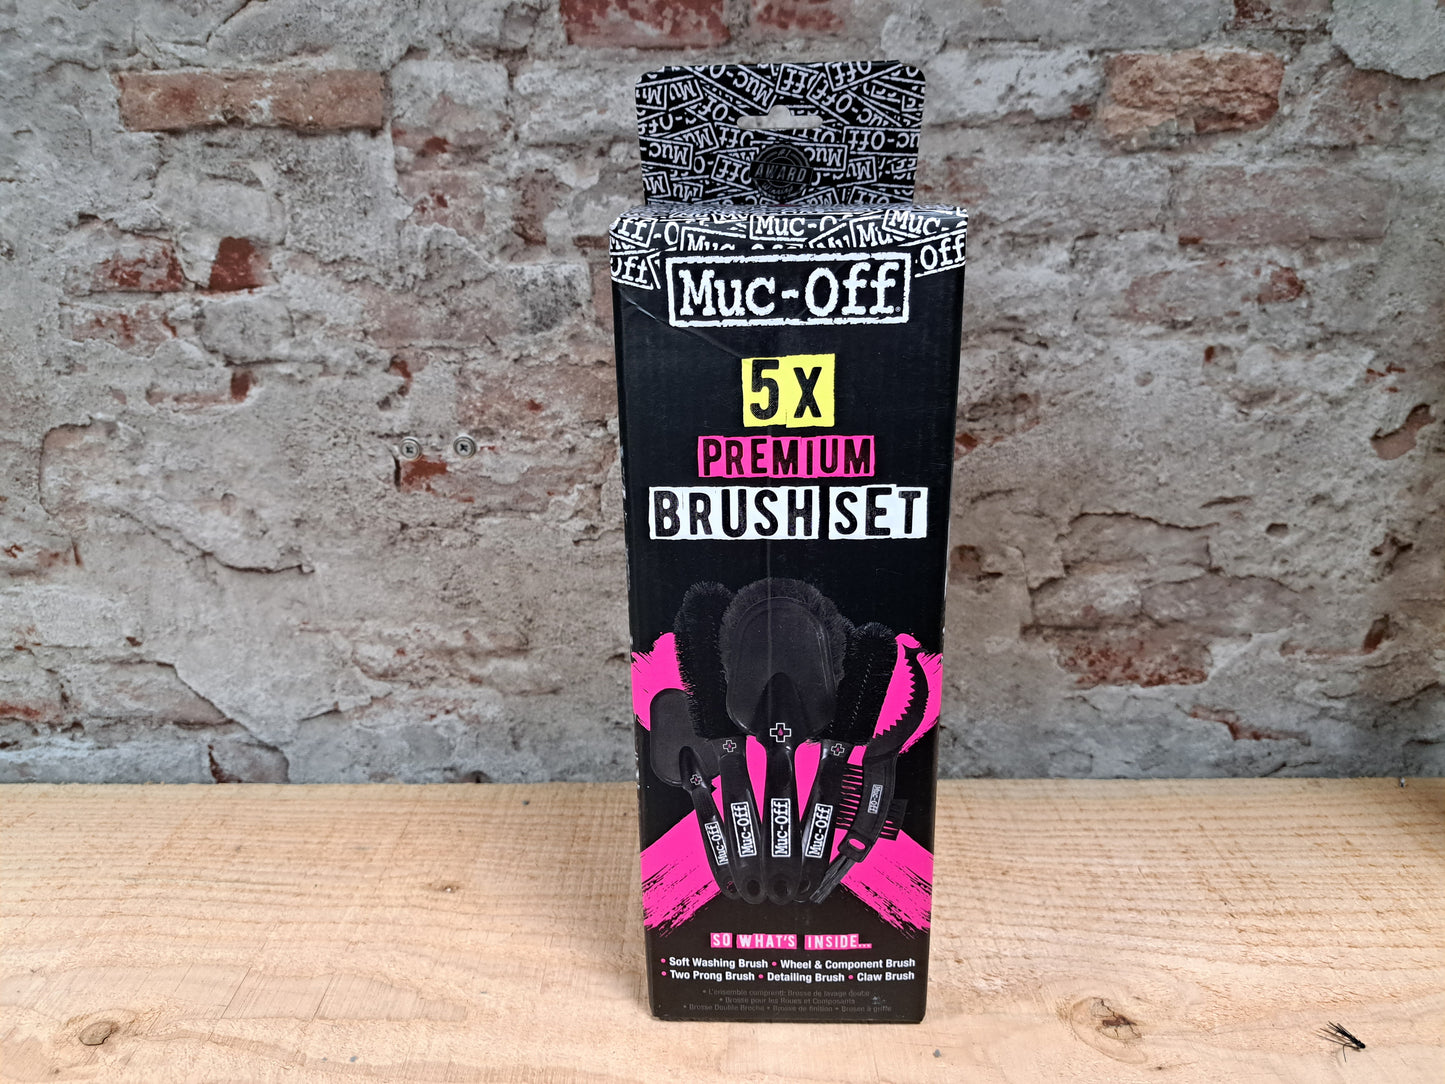 Muc-Off 5x Premium Brush Set